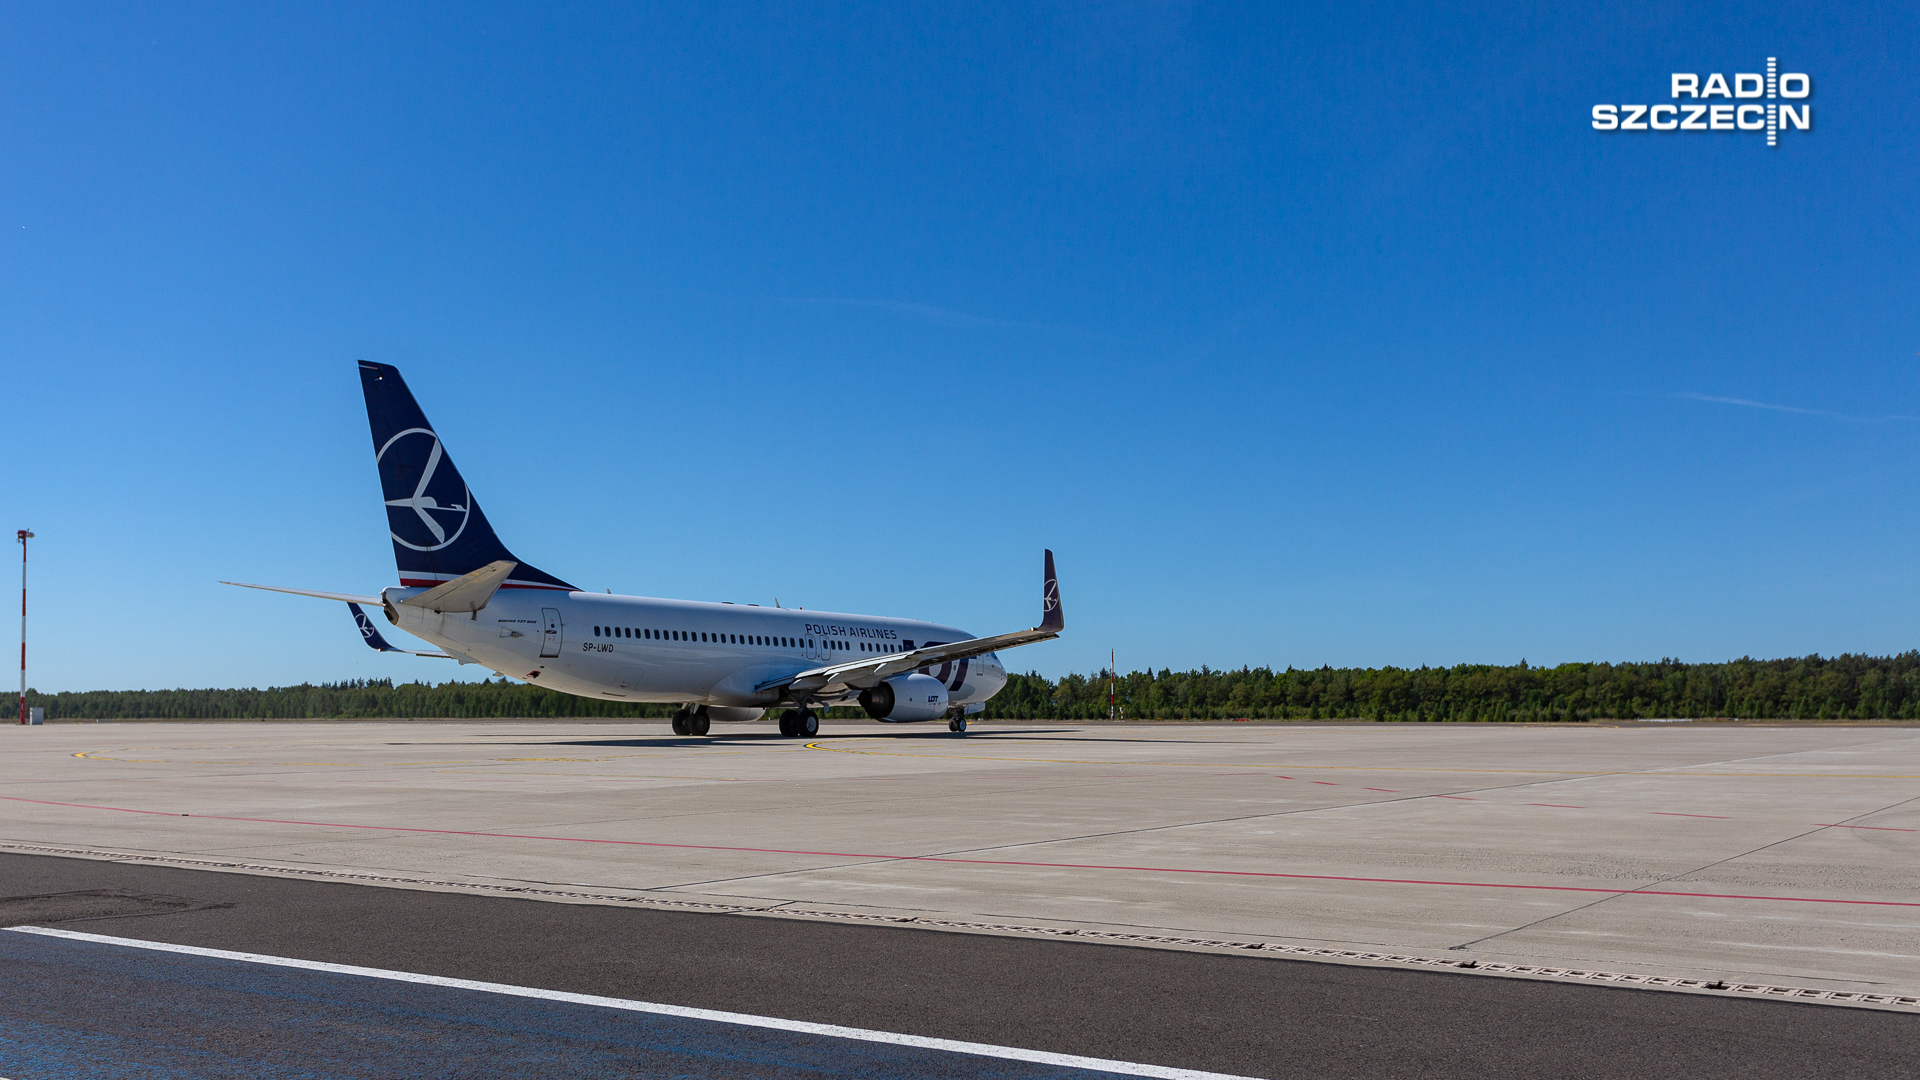 Polskie Linie Lotnicze uruchamiają nowe połączenia. W ostatnich dniach maja i na początku czerwca w rozkładzie lotów pojawi się kilka nowych kierunków.